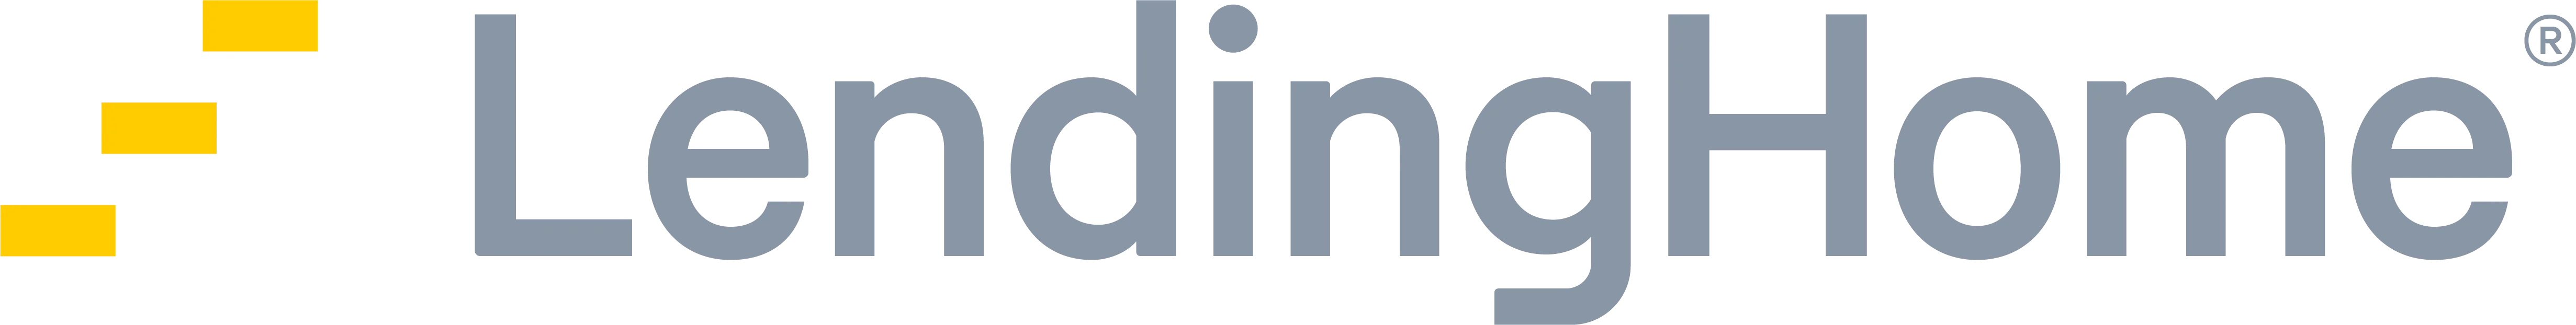 Lending-Home-Logo-1